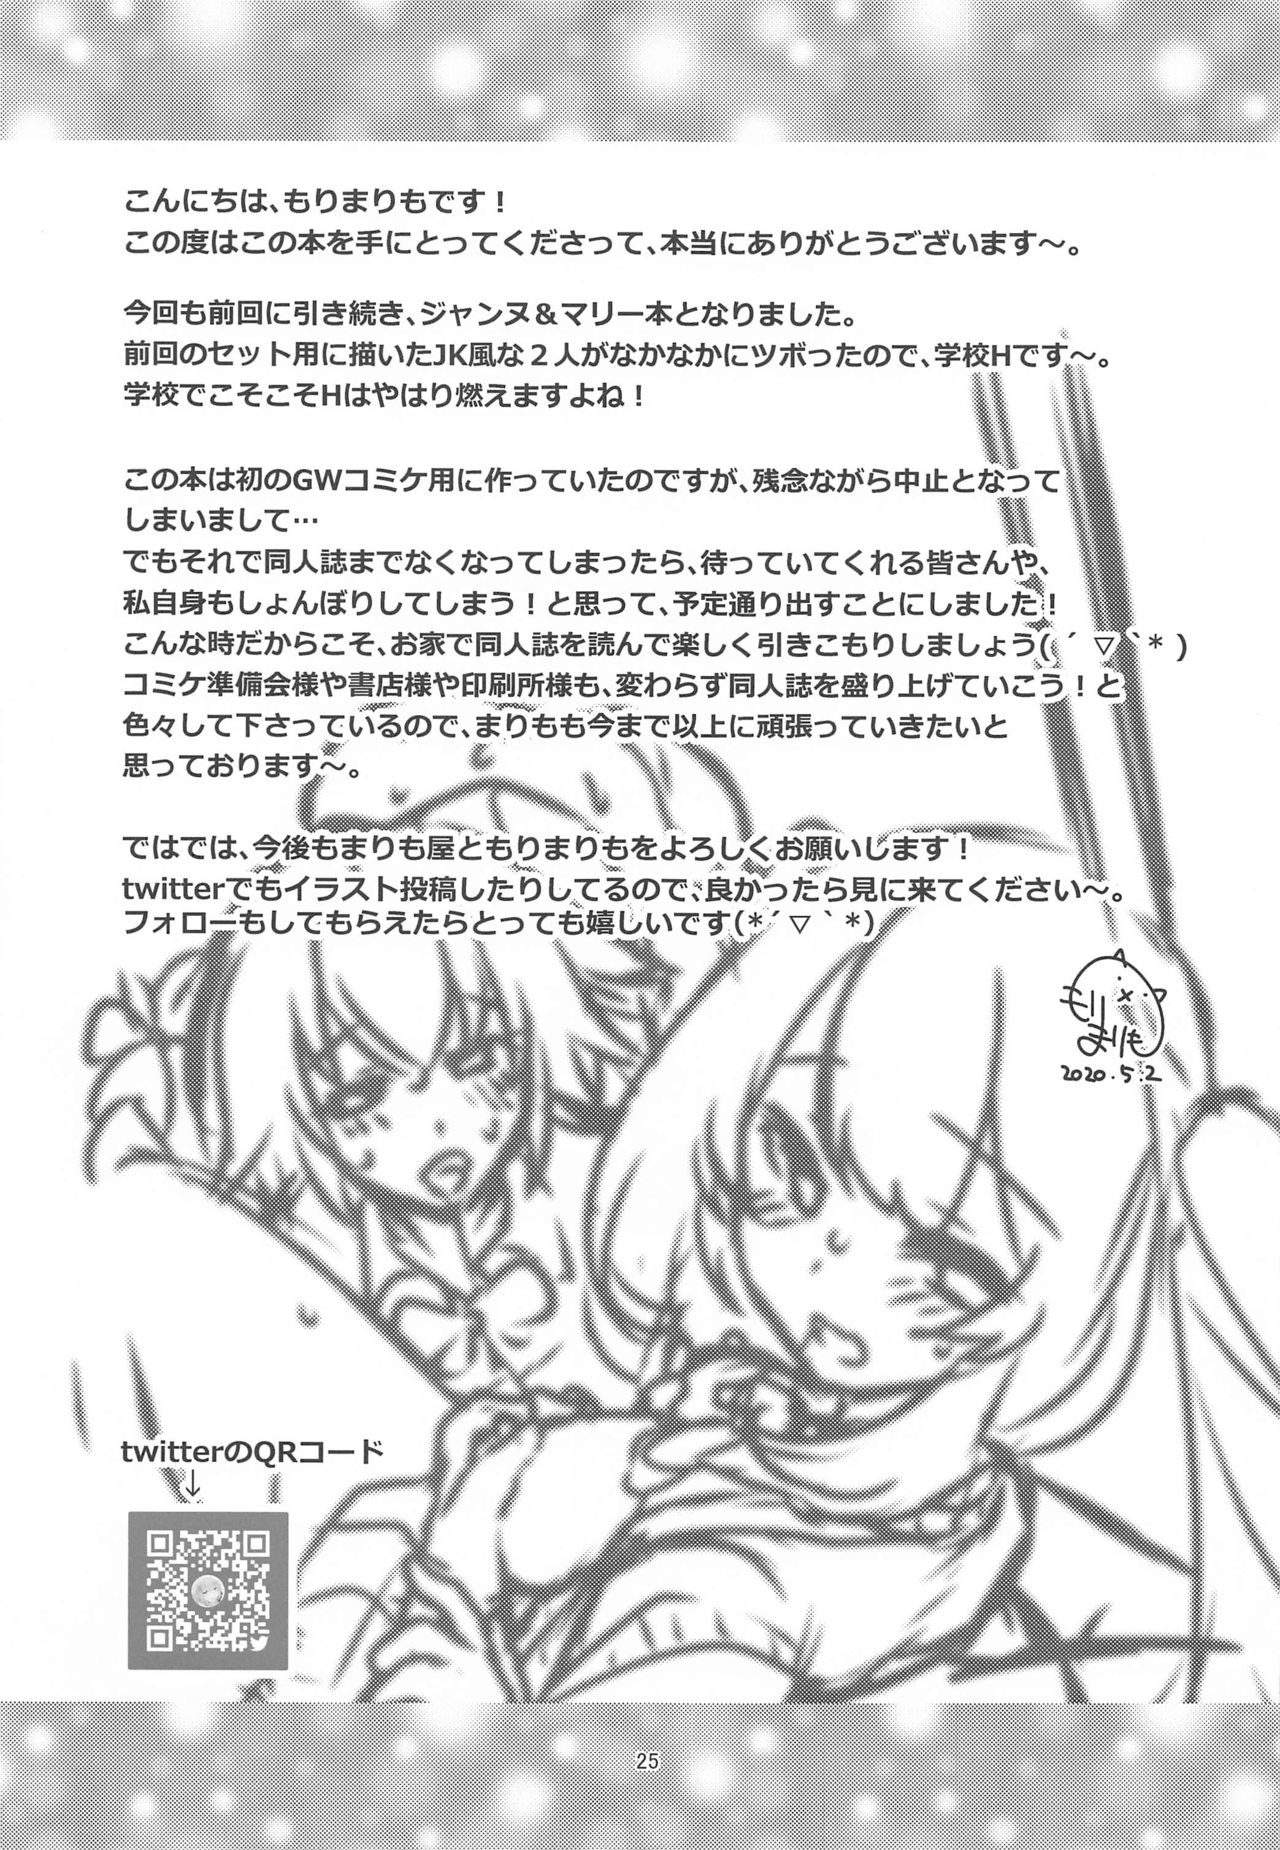 [まりも屋 (もりまりも)] CHALDEA GIRLS COLLECTION ジャンヌ＆マリー制服Hしまくる本 (Fate/Grand Order)